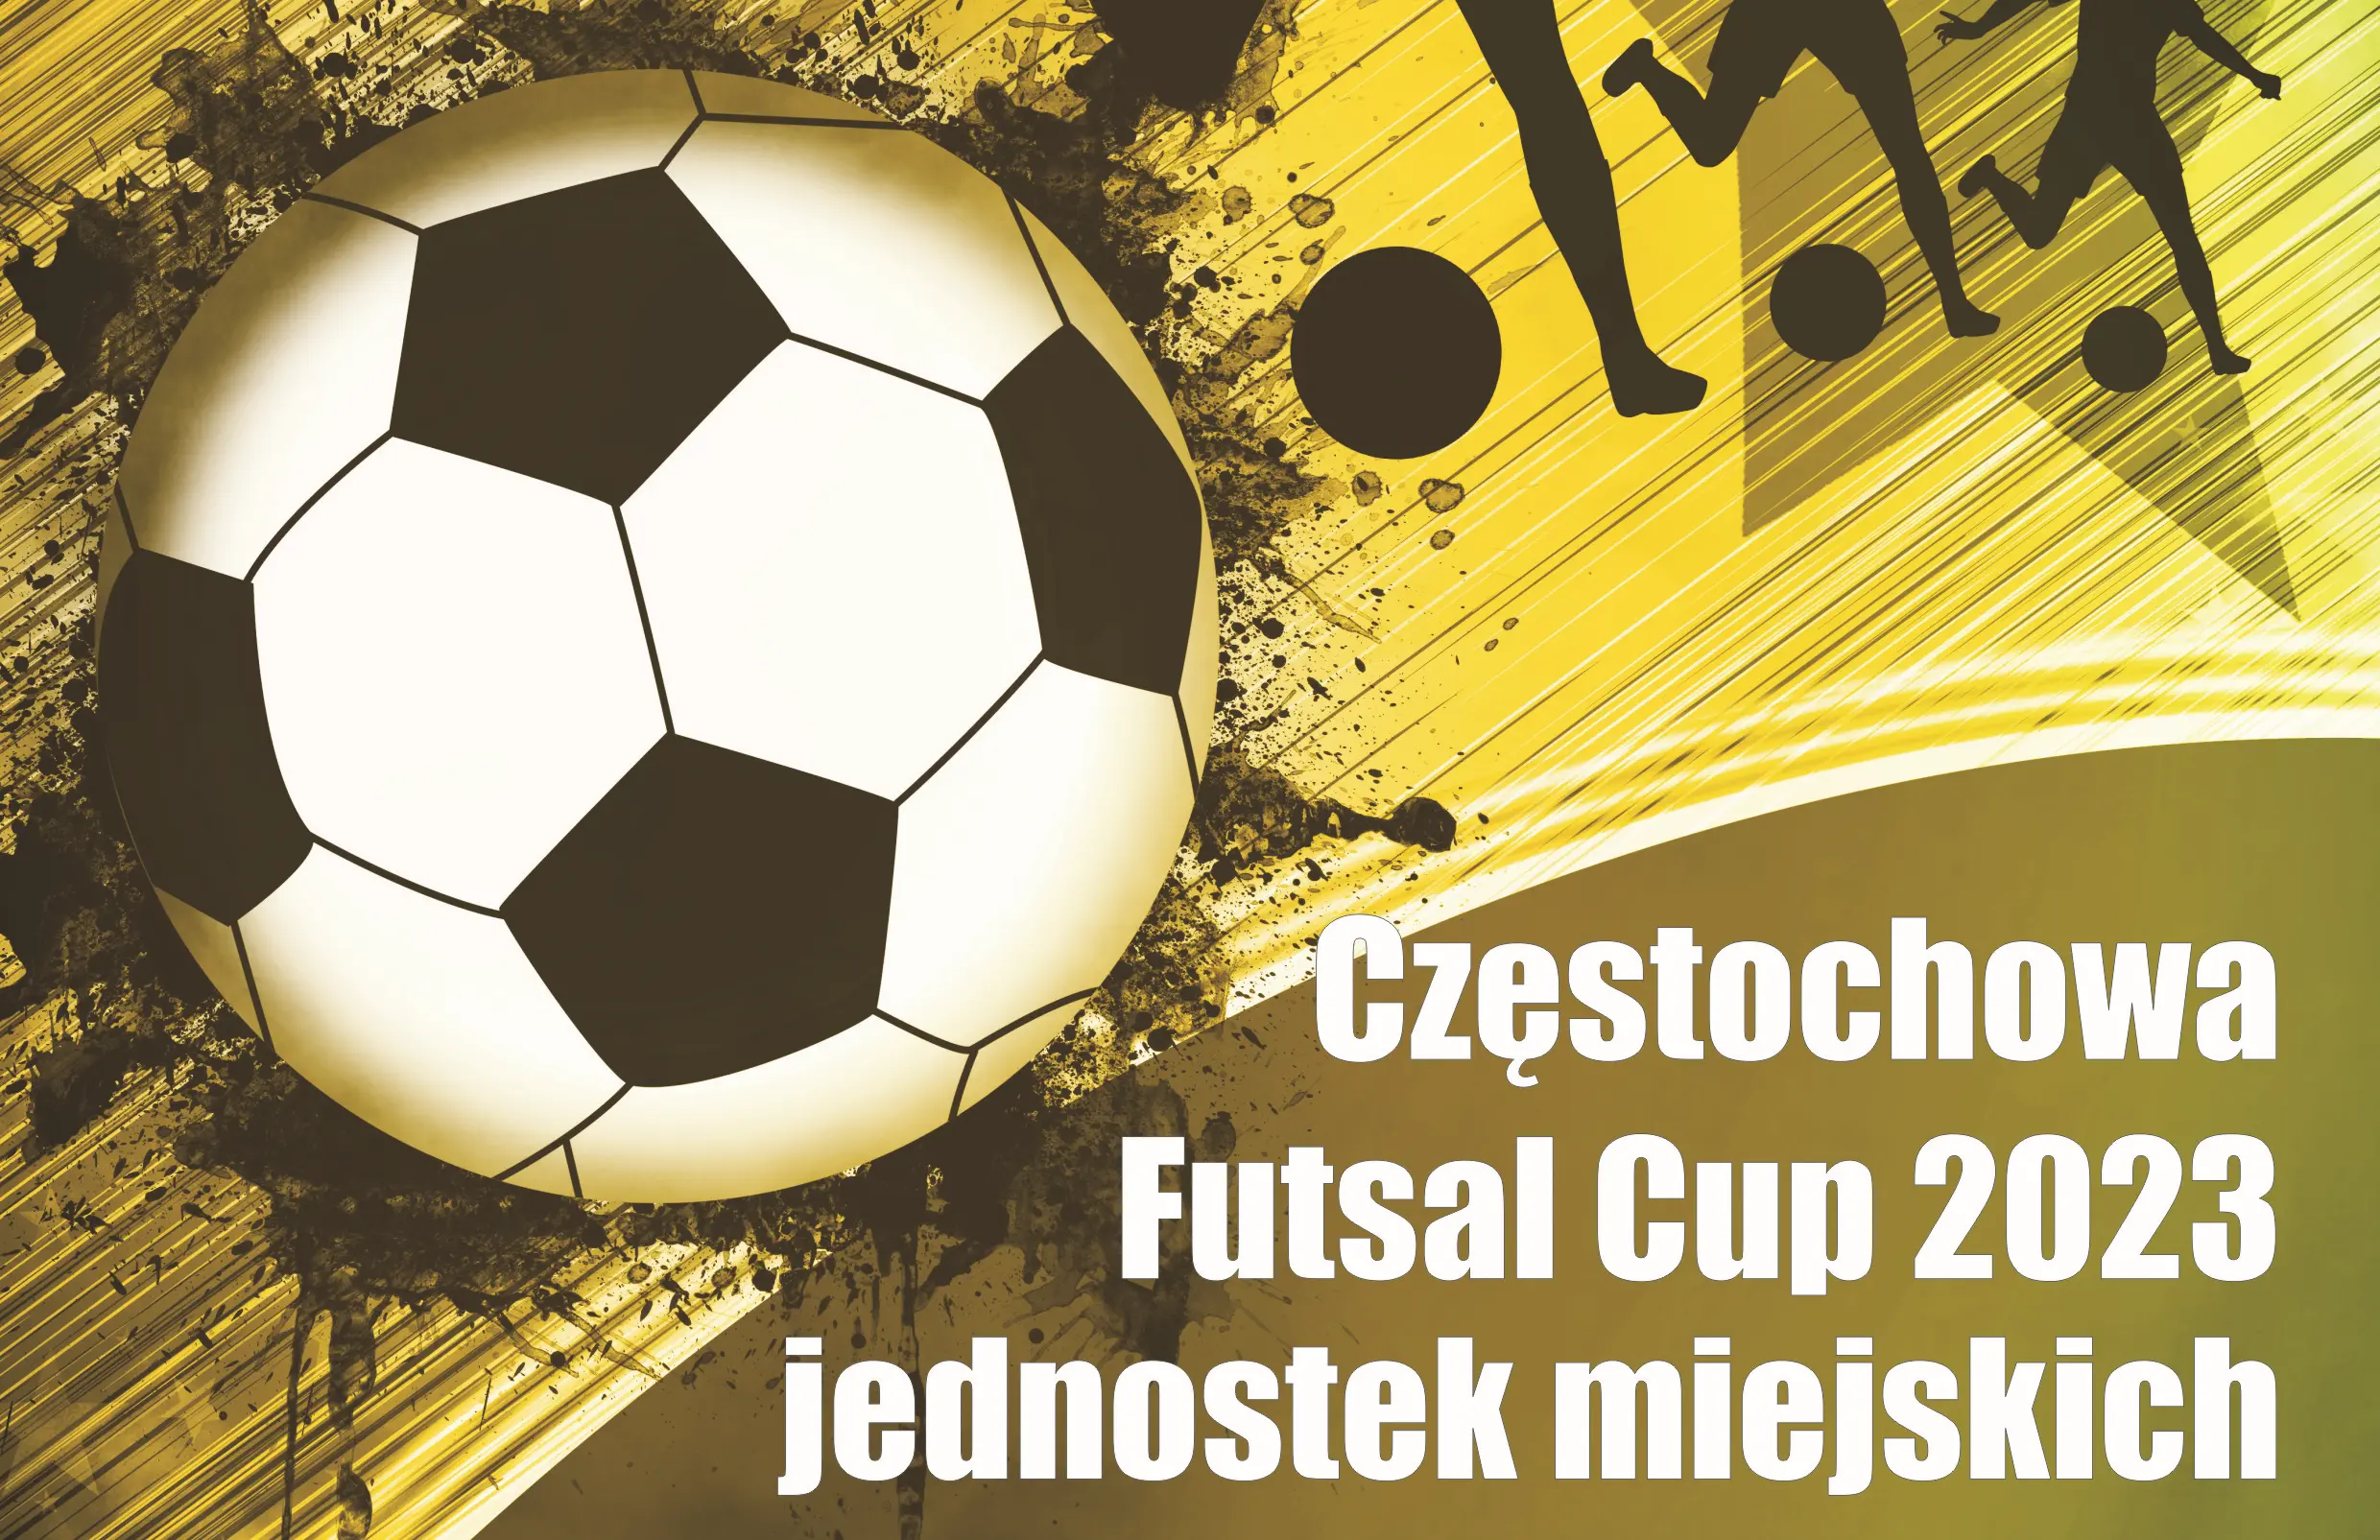 Częstochowa Futsal Cup 2023 jednostek miejskich